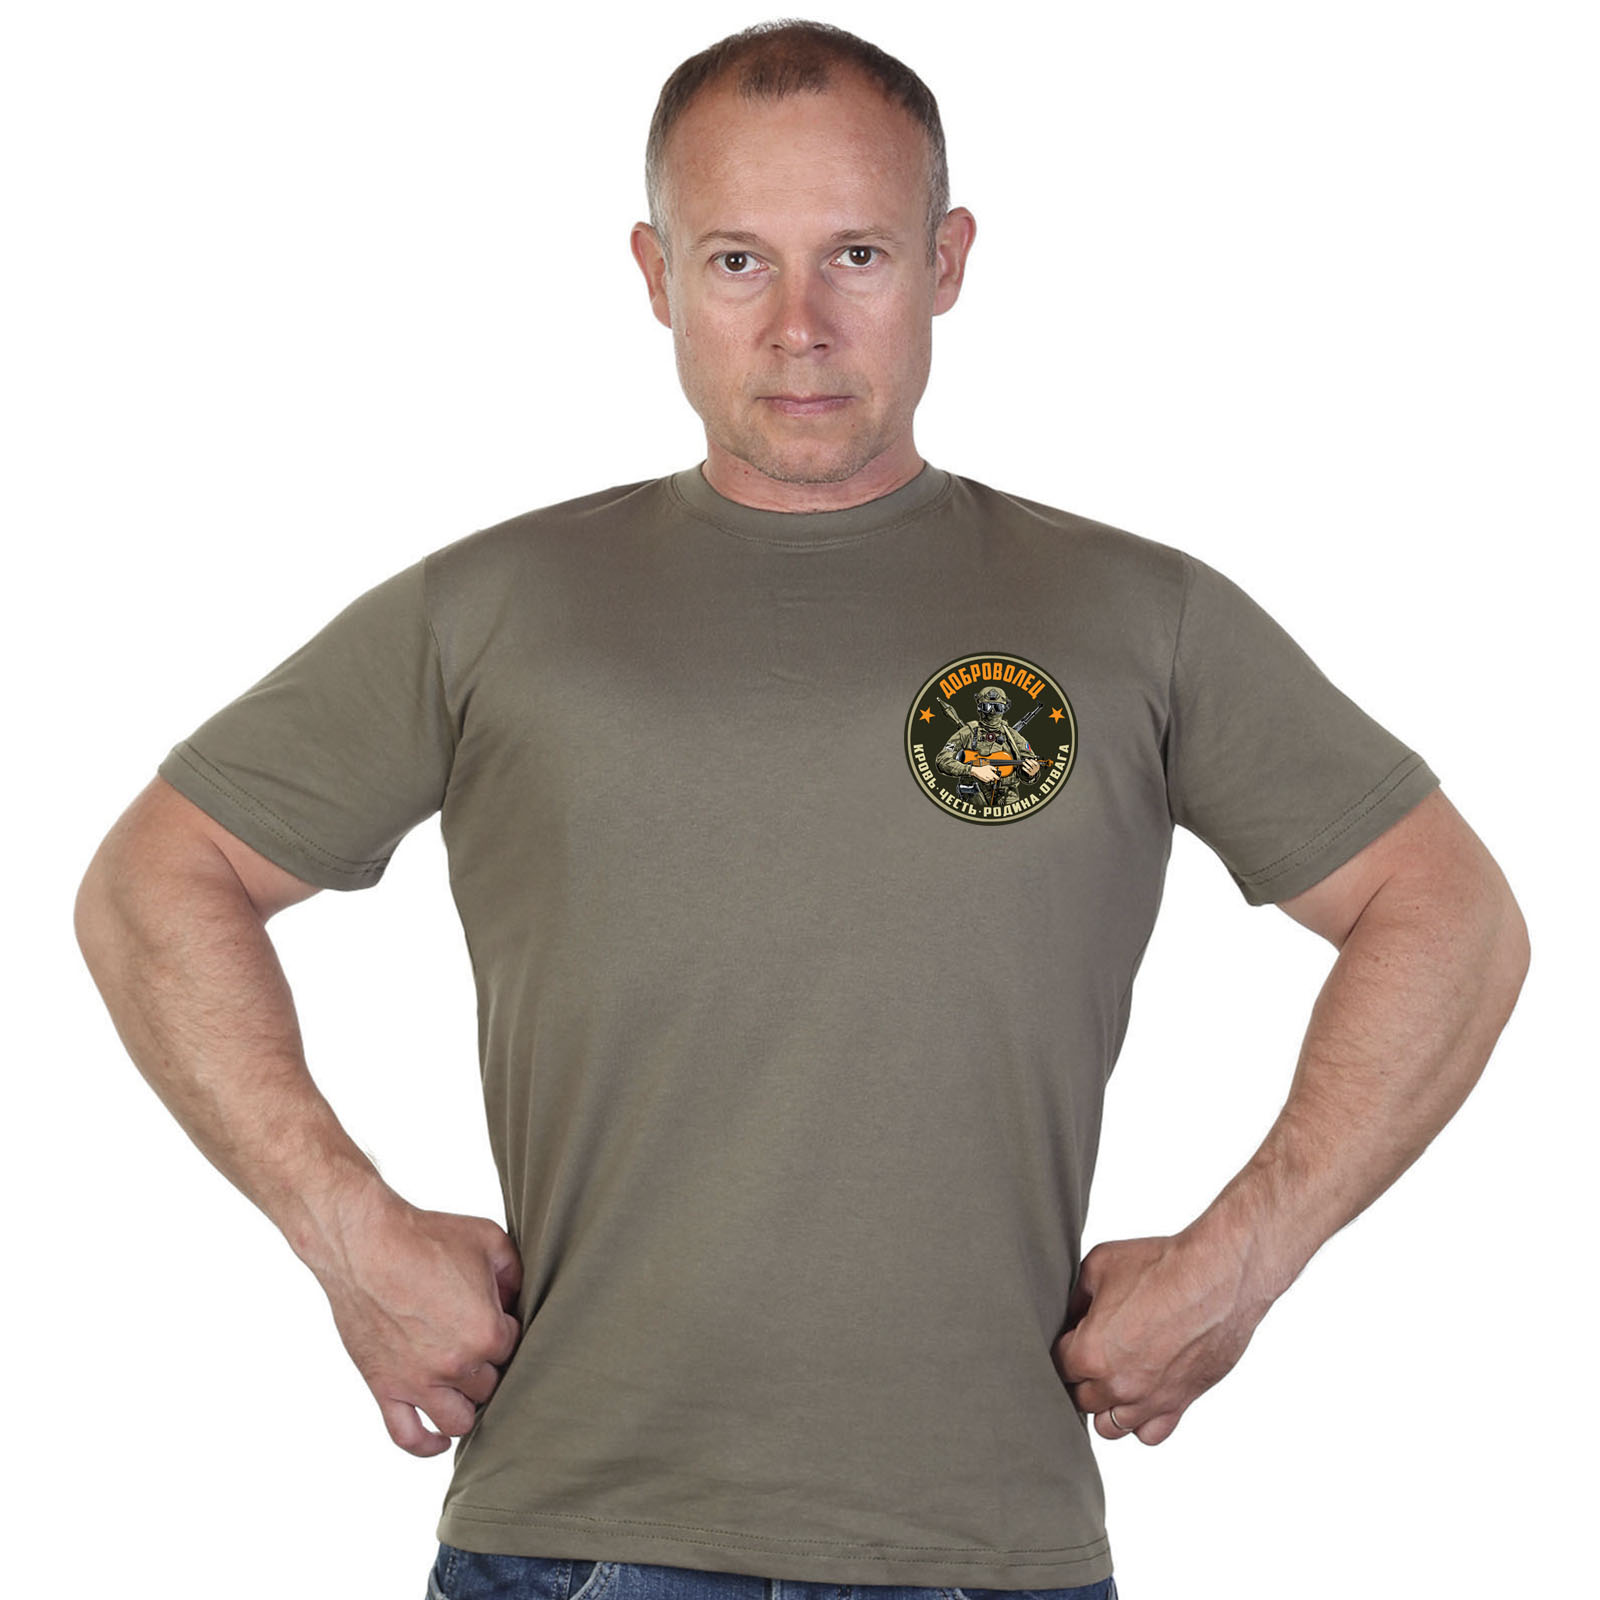 Купить оливковую трикотажную футболку с термотрансфером Доброволец онлайн